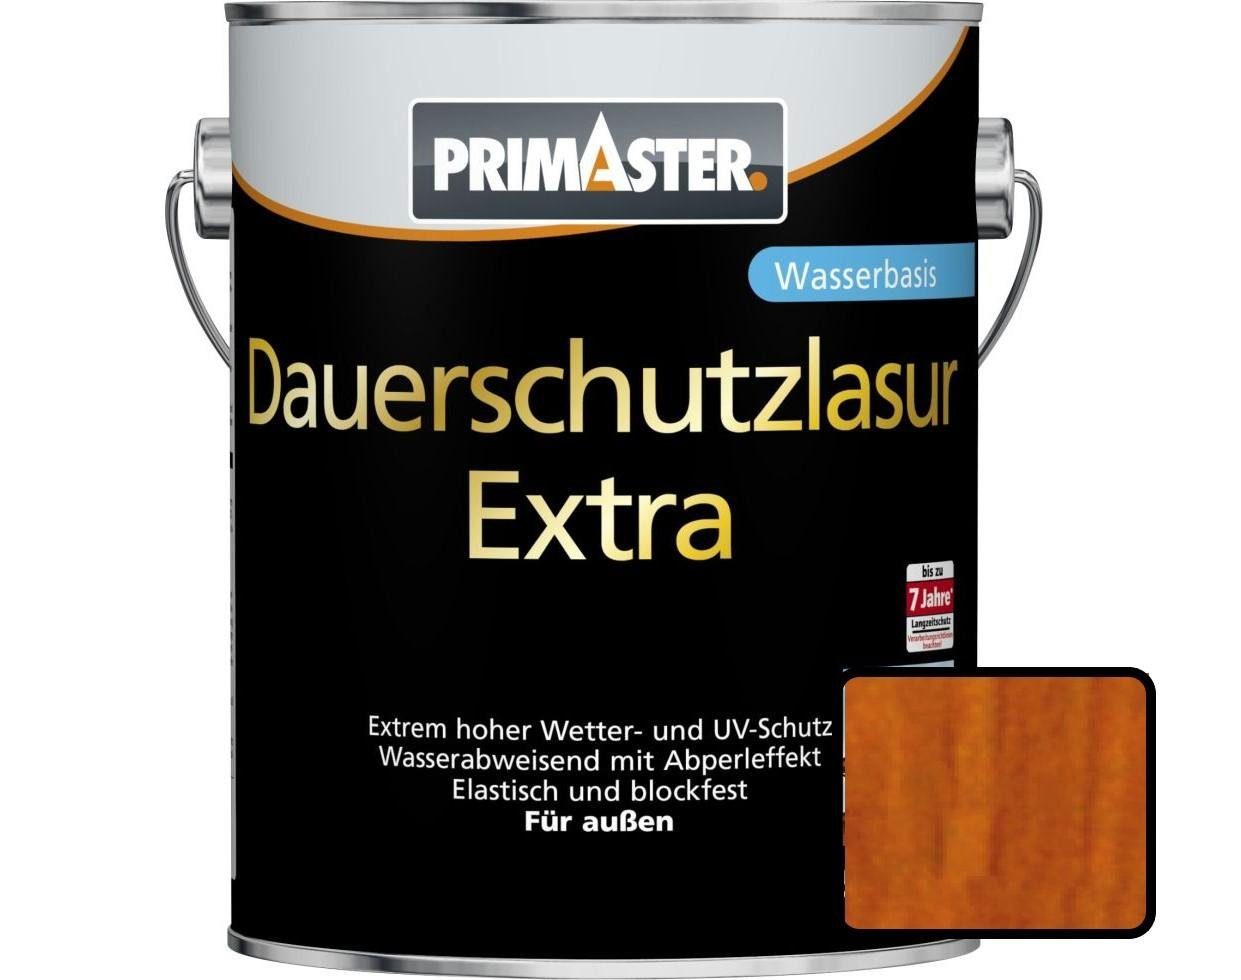 Dauerschutzlasur Lasur 5 Primaster Extra teak Primaster L